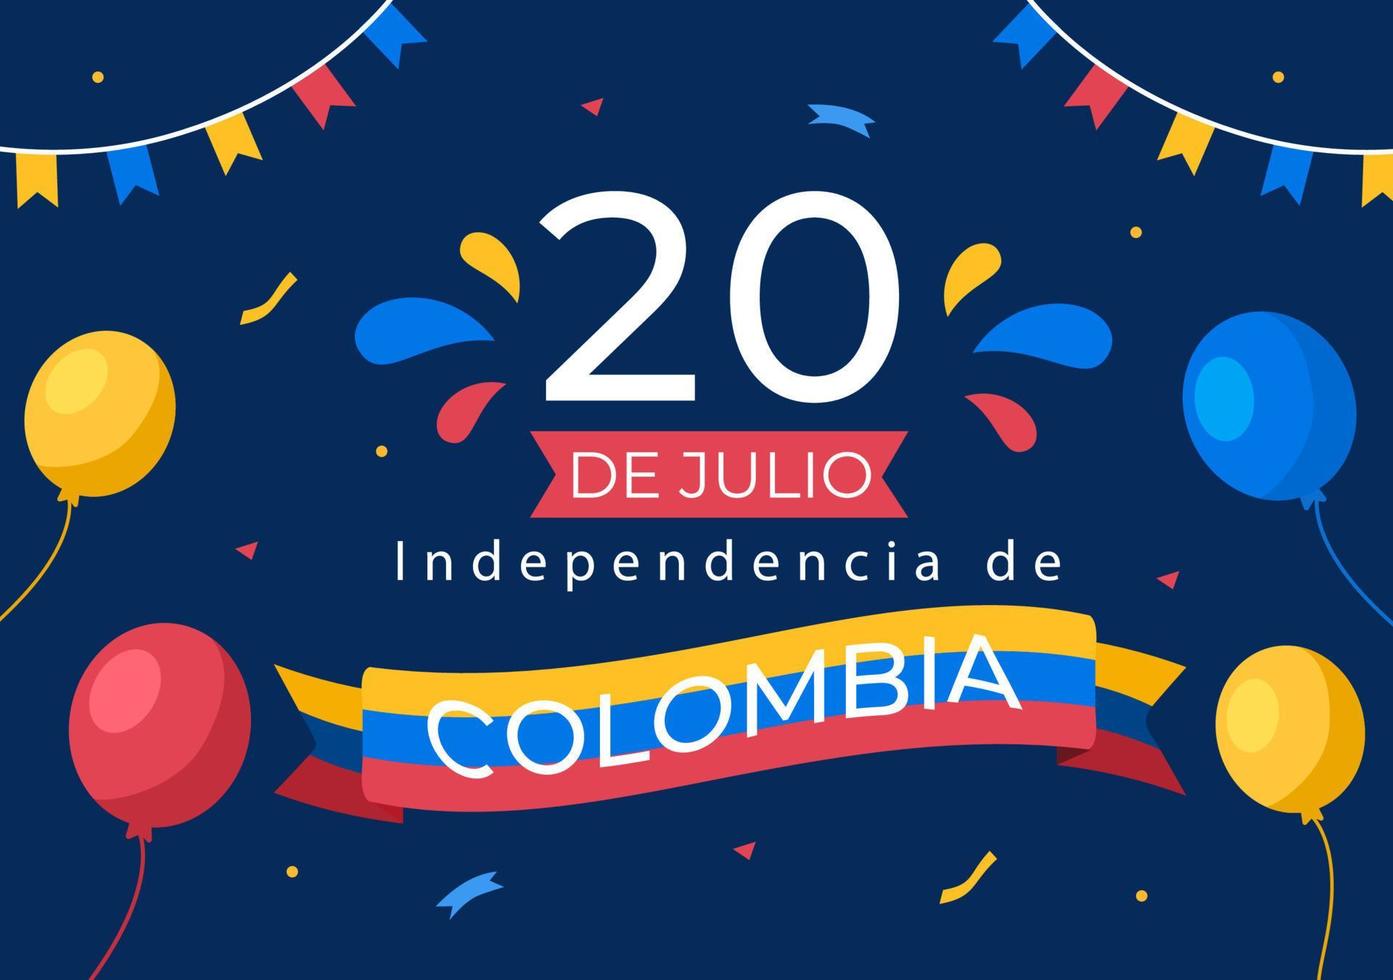 20 juillet independencia de colombia illustration de dessin animé avec des drapeaux et des ballons pour la conception de style affiche vecteur